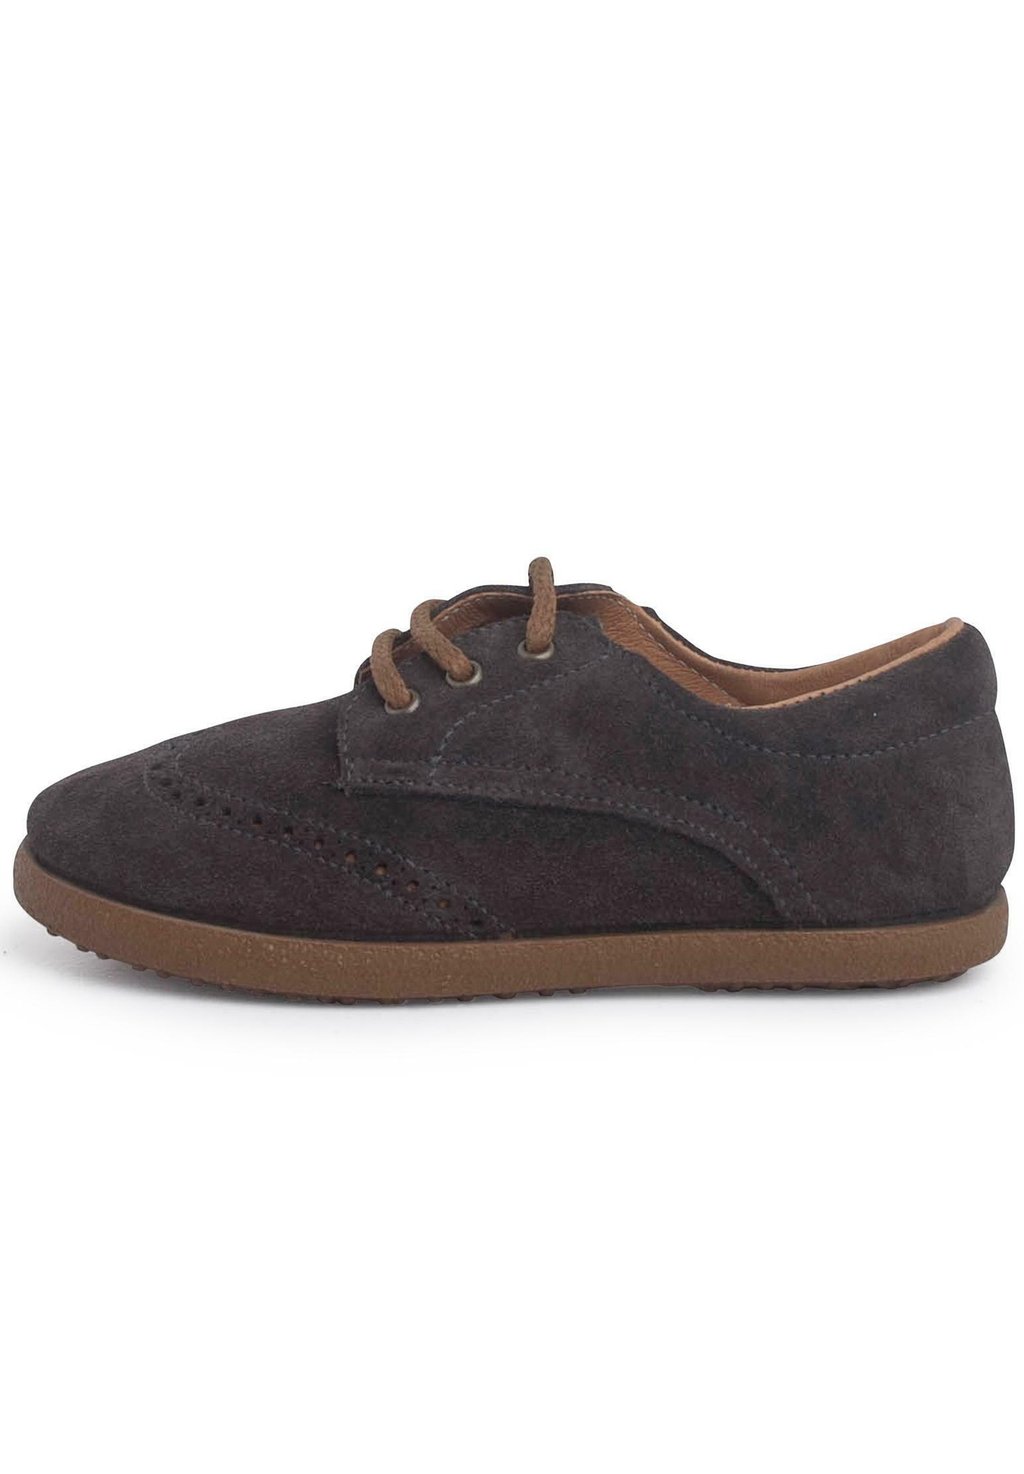 Обувь для обучения OXFORD Pisamonas, цвет gris oscuro спортивные туфли на шнуровке safari cordones pisamonas цвет gris oscuro